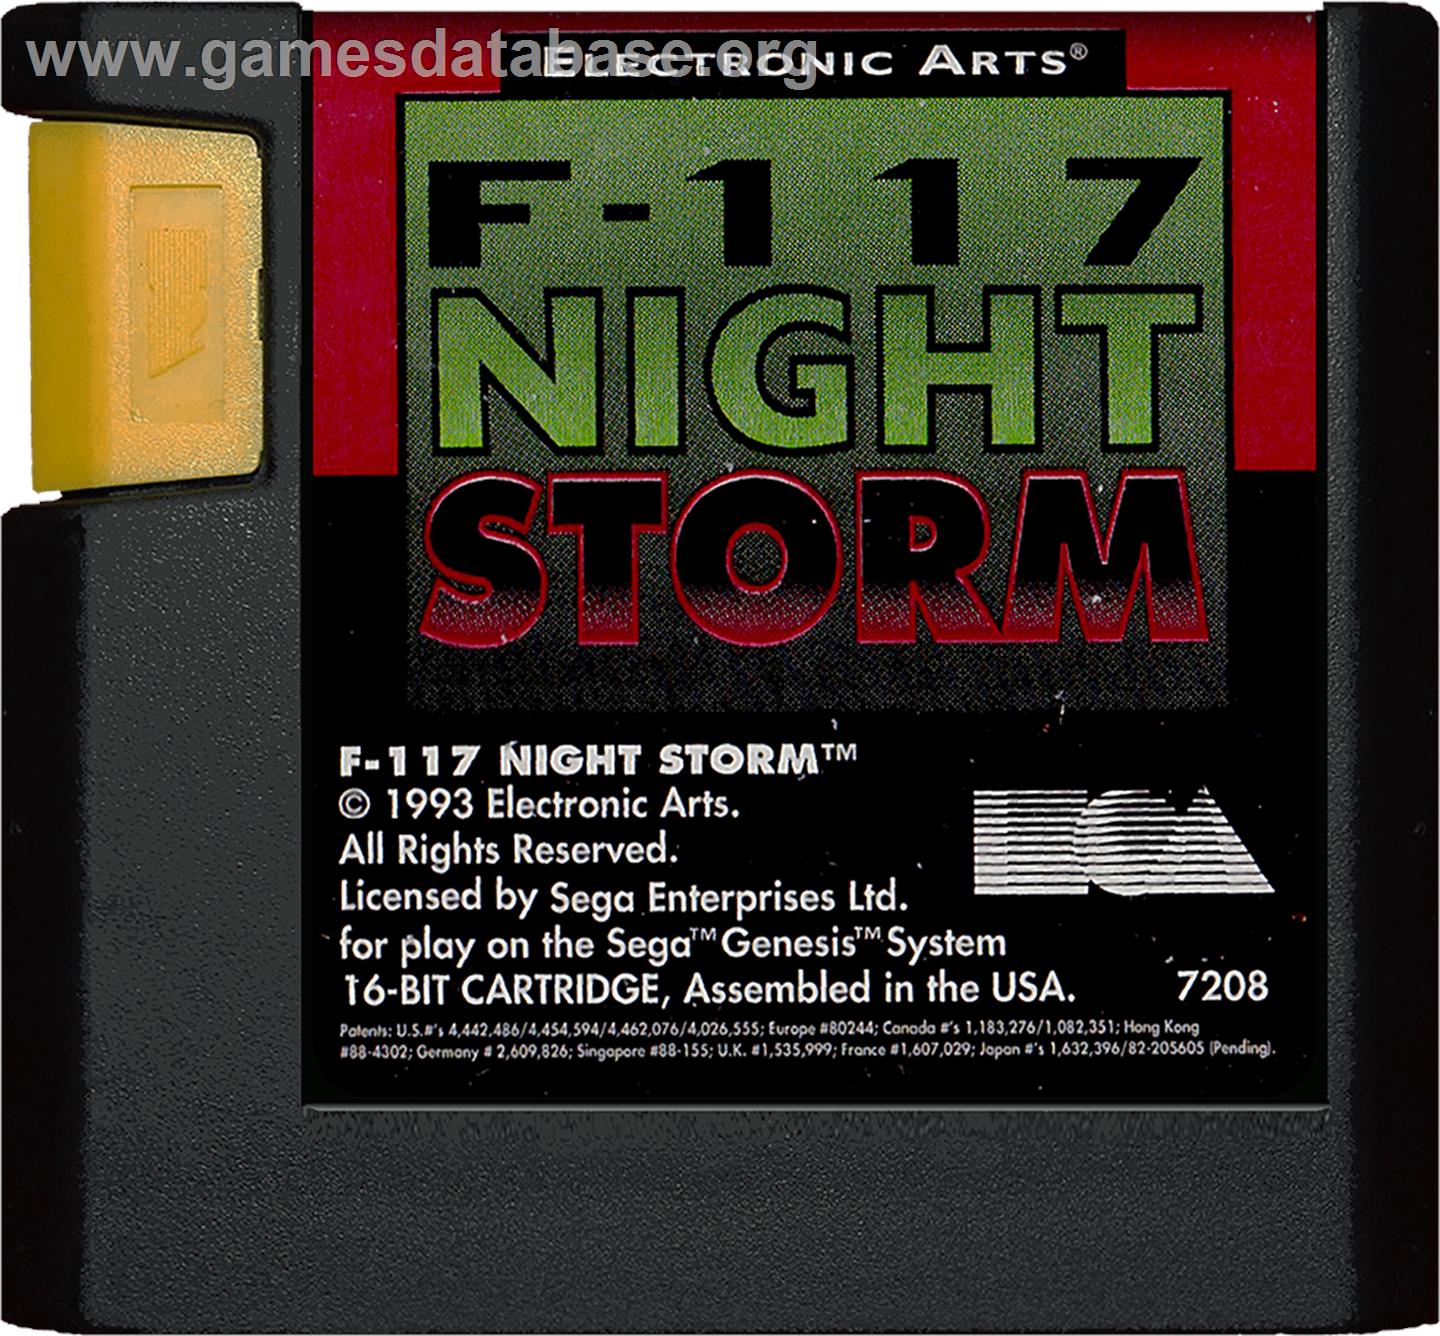 F-117 Night Storm - Sega Genesis - Artwork - Cartridge